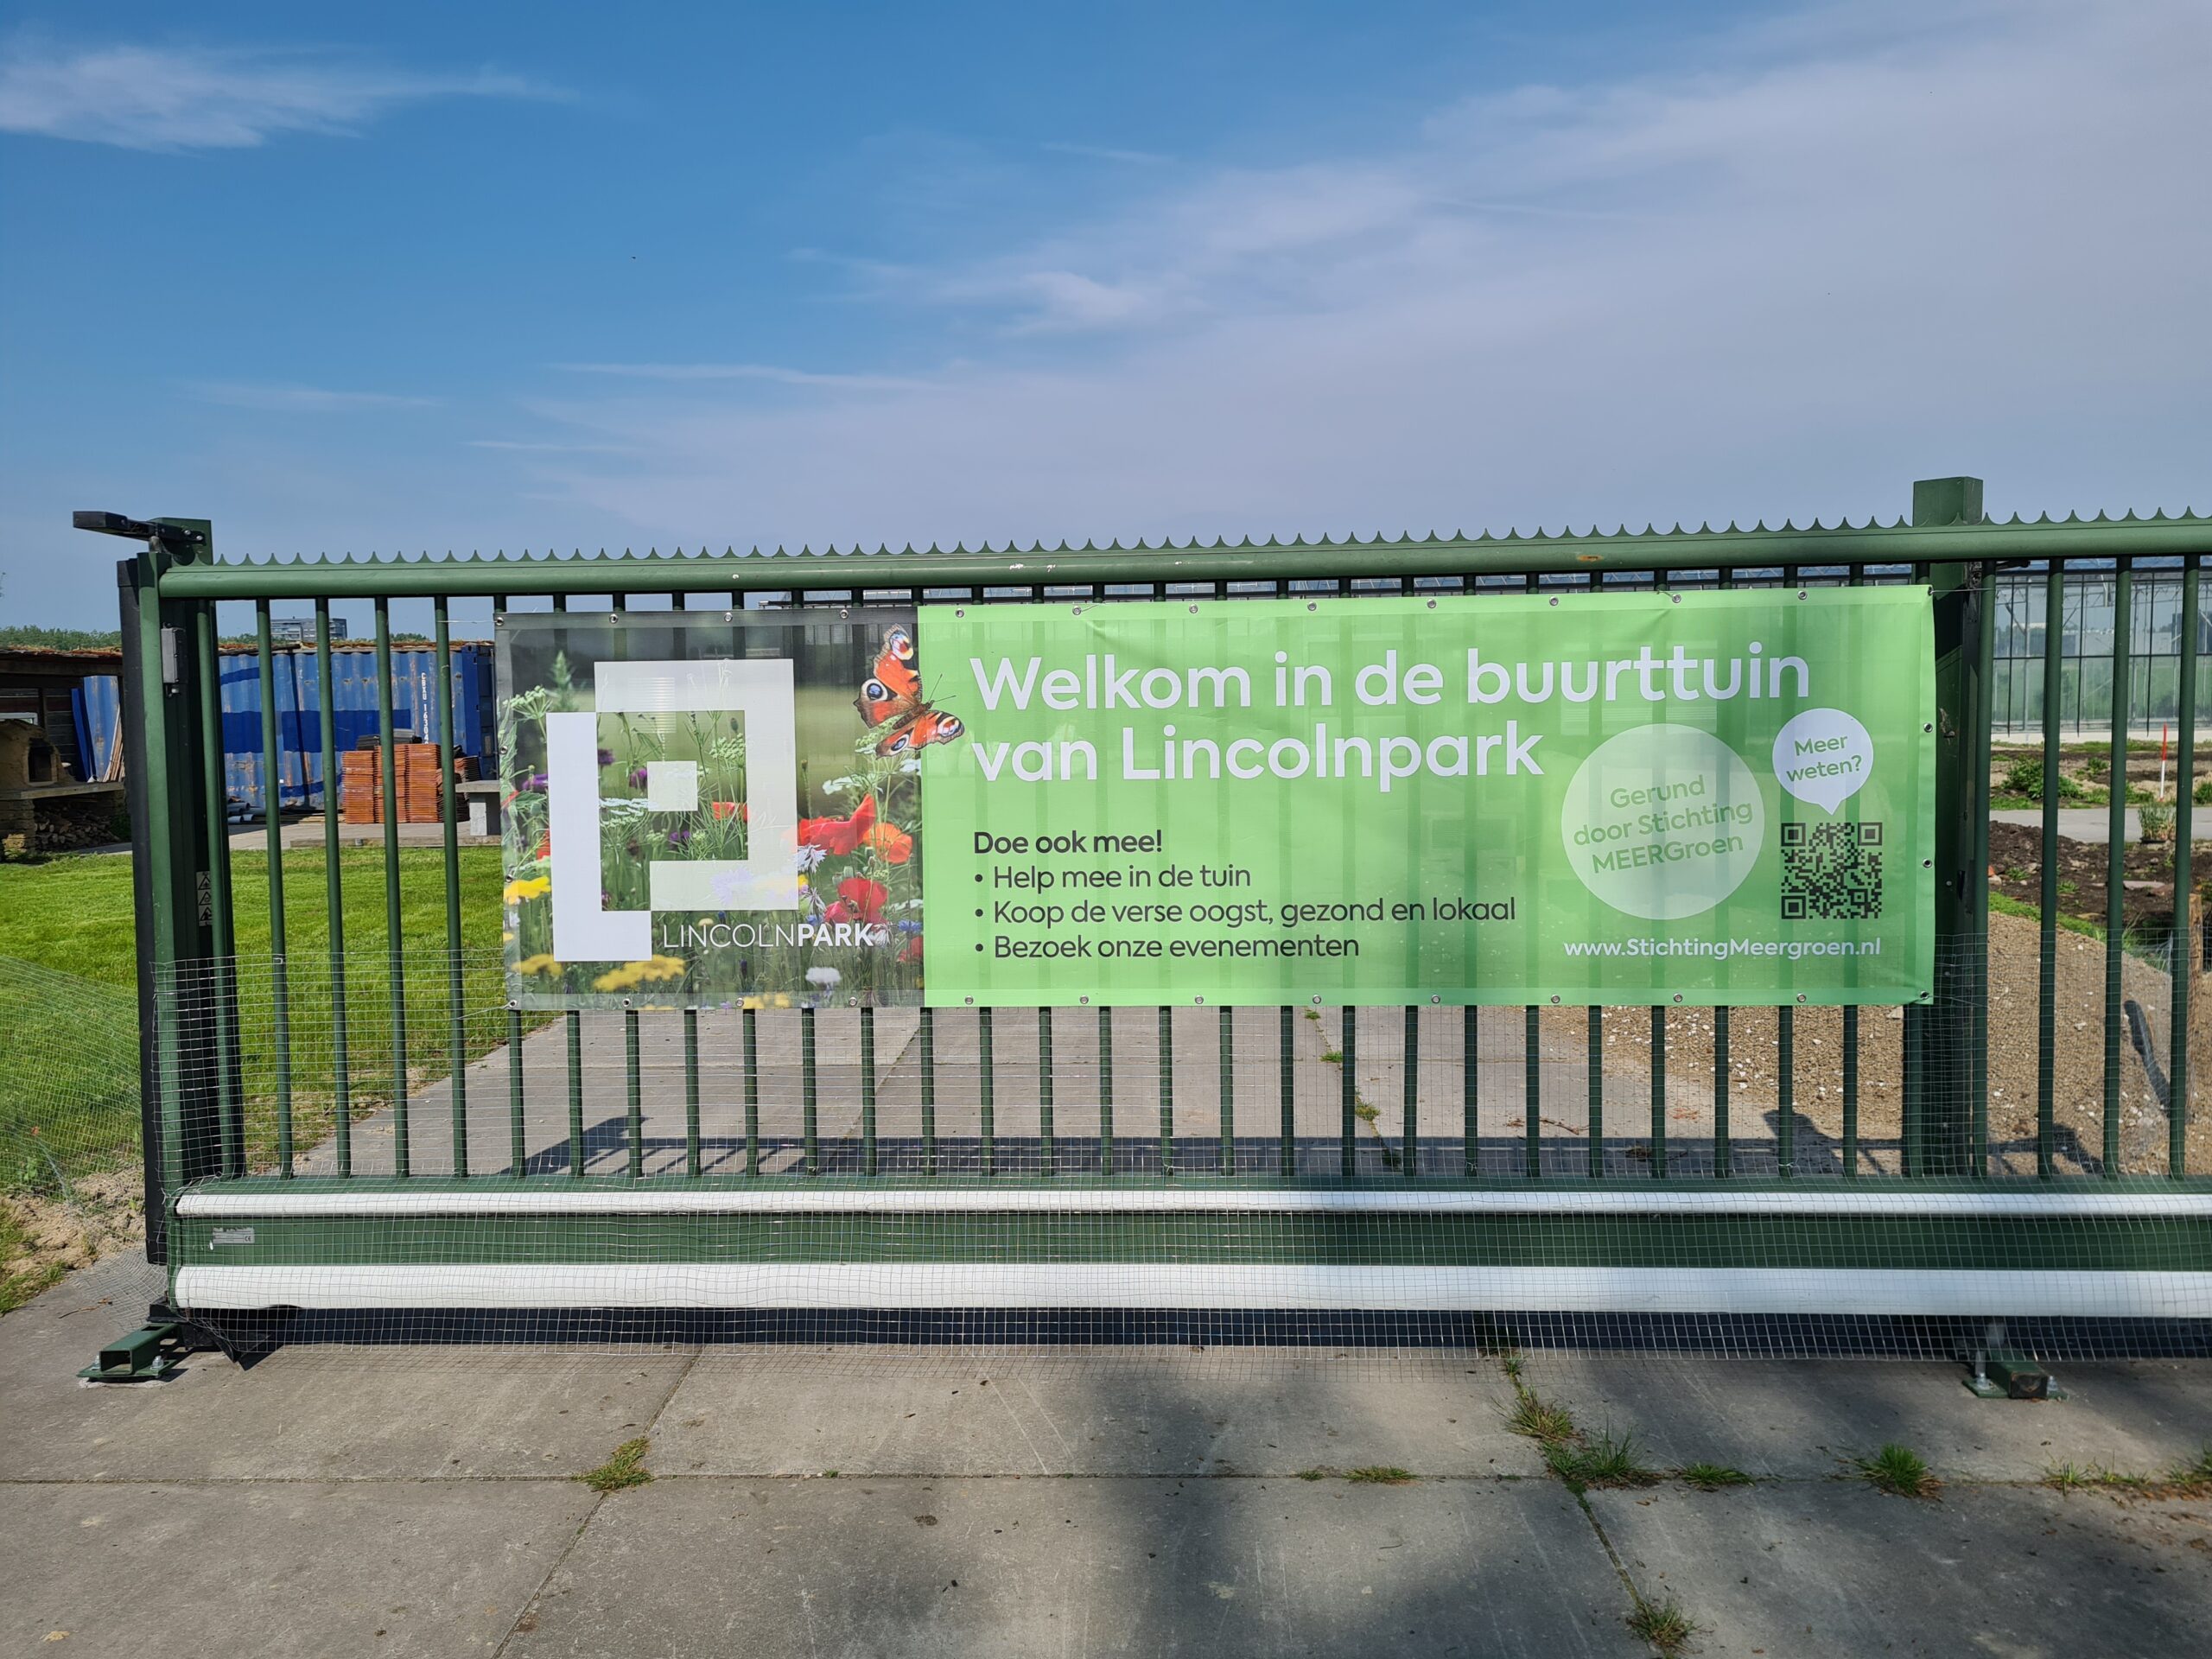 Blog 12mei:  Buurttuin  Lincolnpark